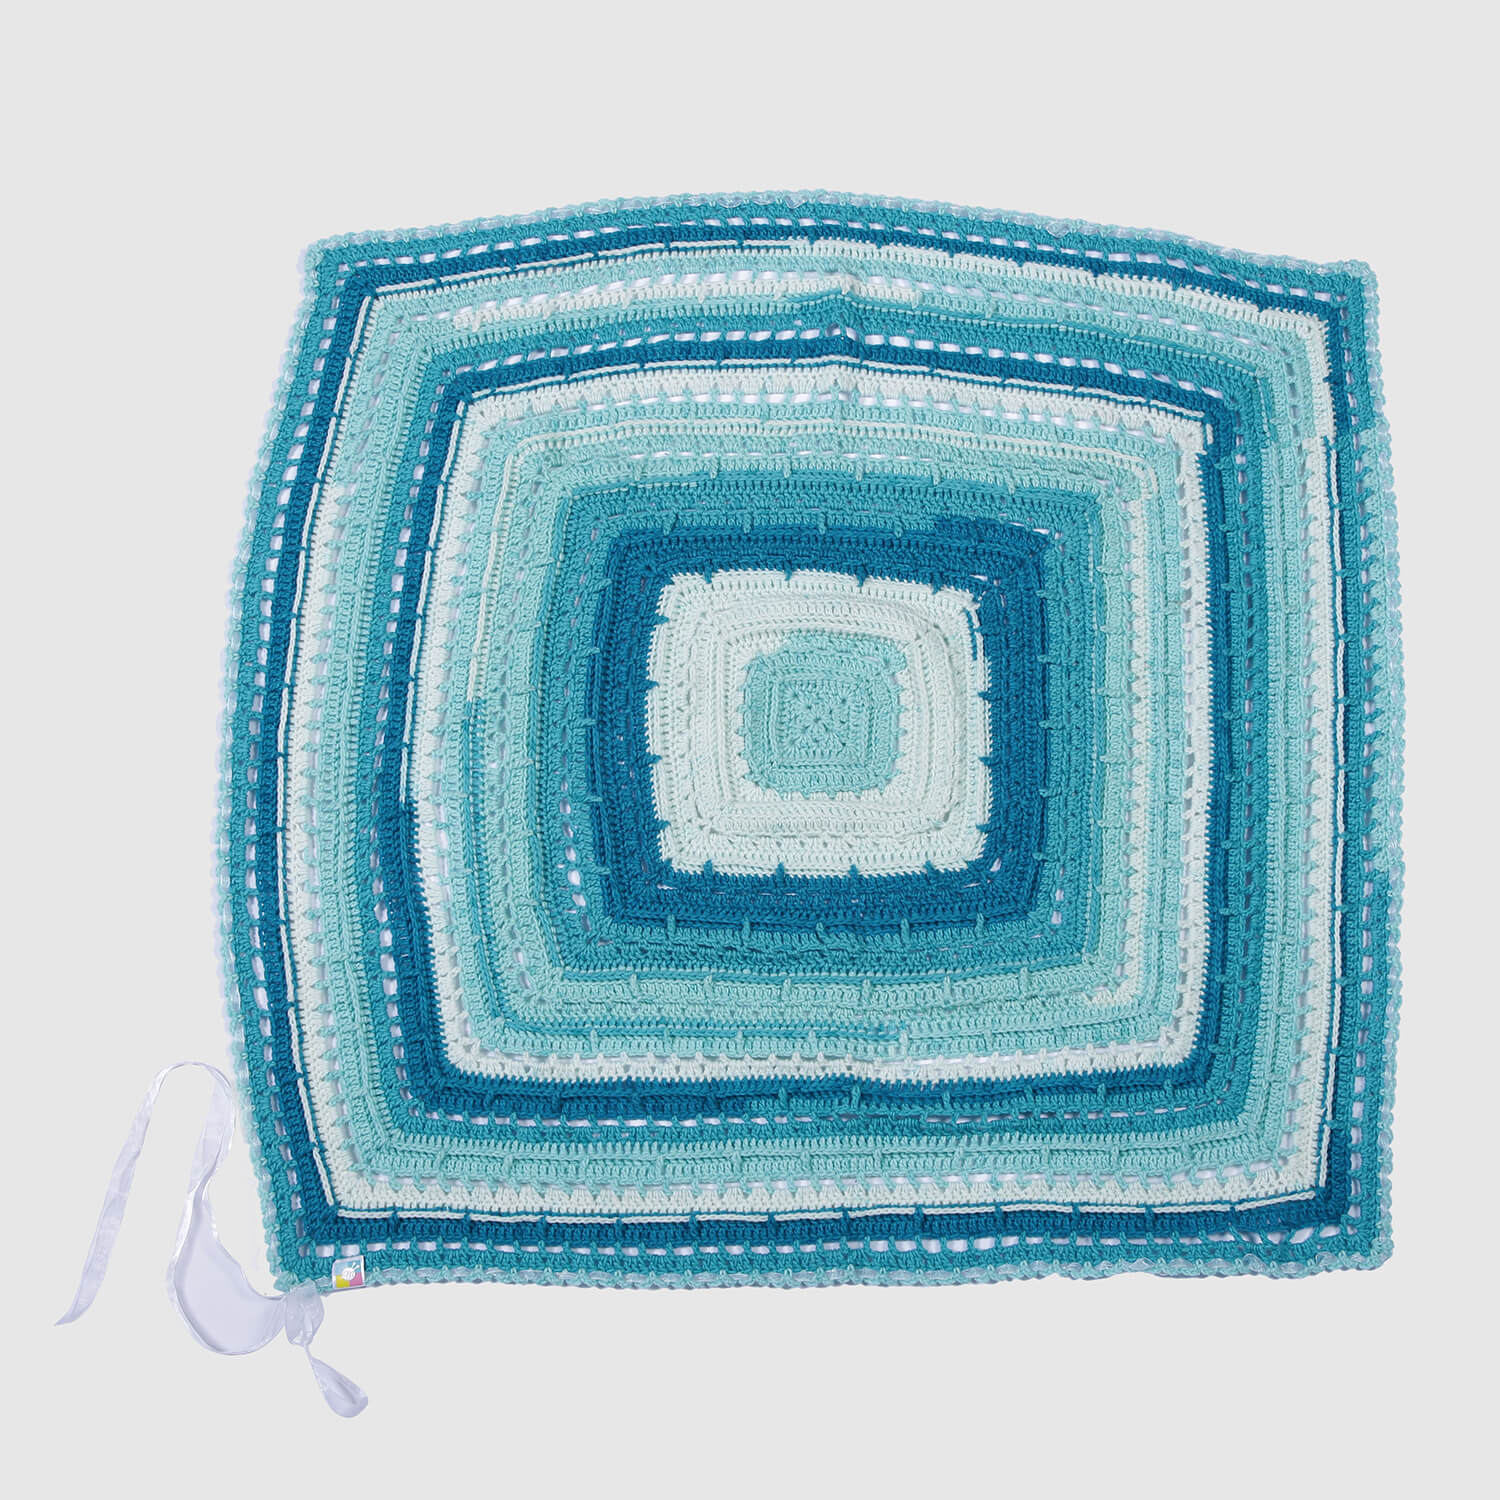 Crochet Tile Baby Blanket - Sea Hues 3130